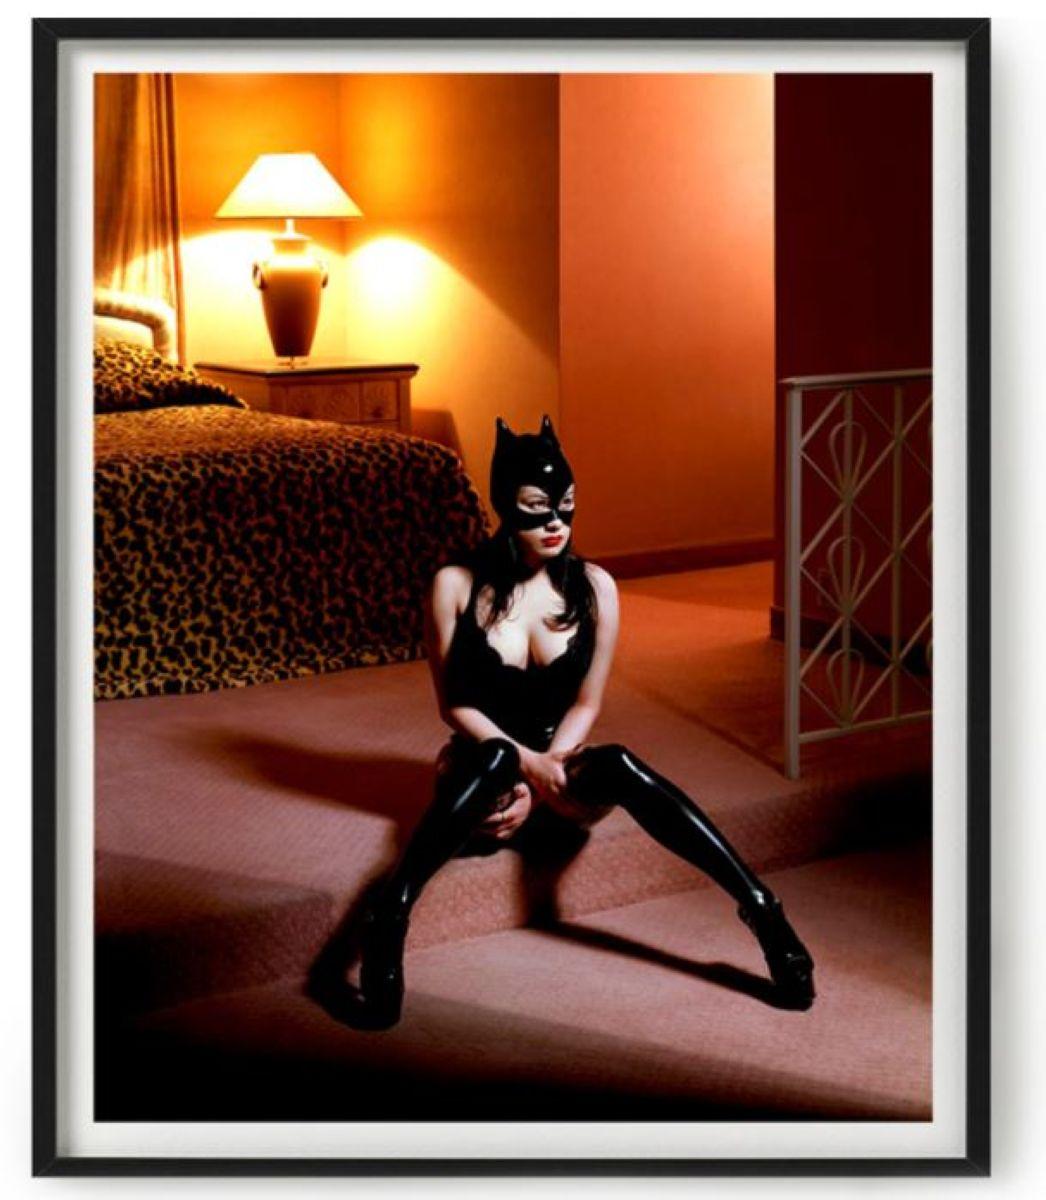 Breaunna in Katzenmaske - Modell in einem Katzenanzug, der auf dem Boden eines Hotelzimmers wohnt (Zeitgenössisch), Photograph, von Albert Watson